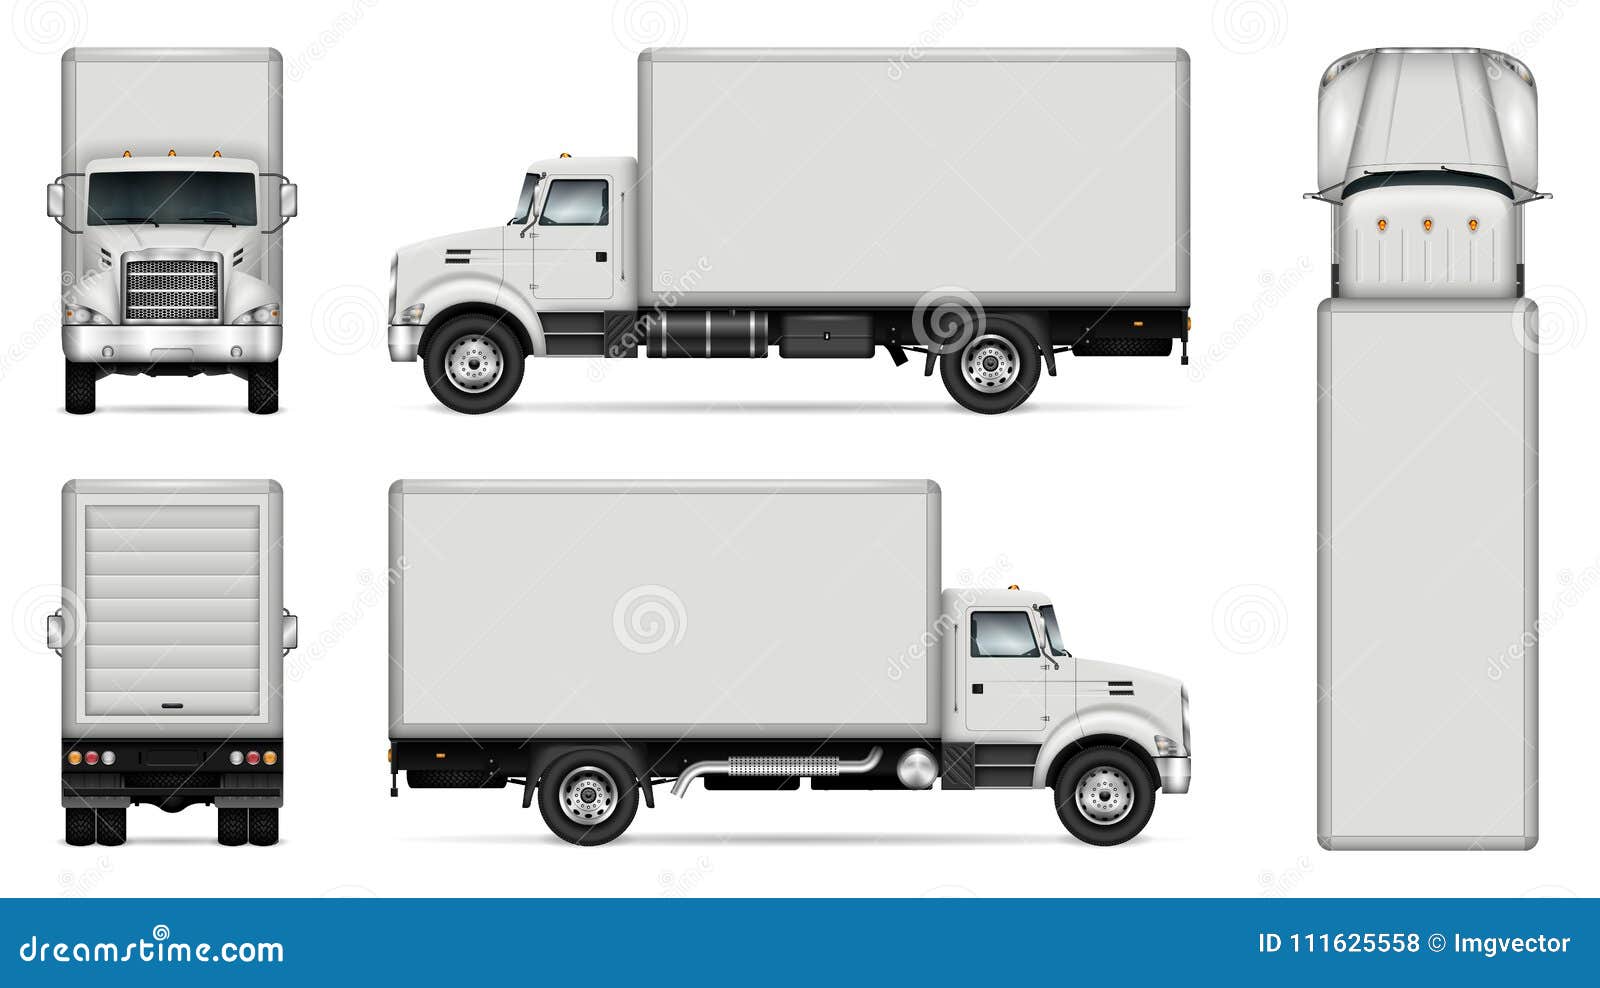 box truck  mockup